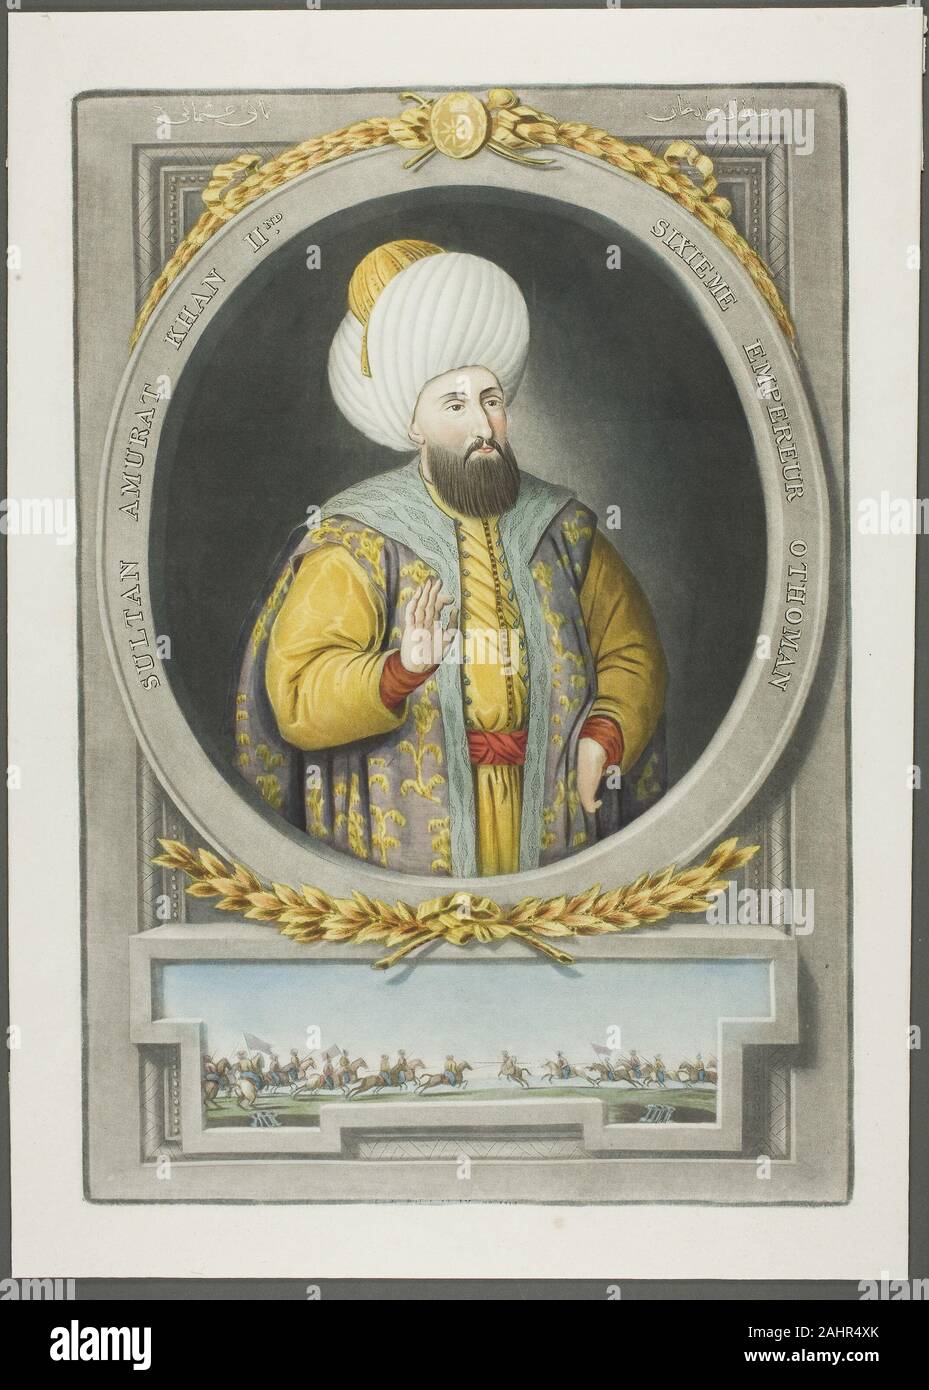 John Young. Amurat Kahn II, von Porträts der Kaiser von der Türkei. 1815.  England. Schabkunst, von Hand gefärbt mit Pinsel und Wasserfarben, auf  Elfenbein webte Papier Sultan Amurat II (Murad) war der